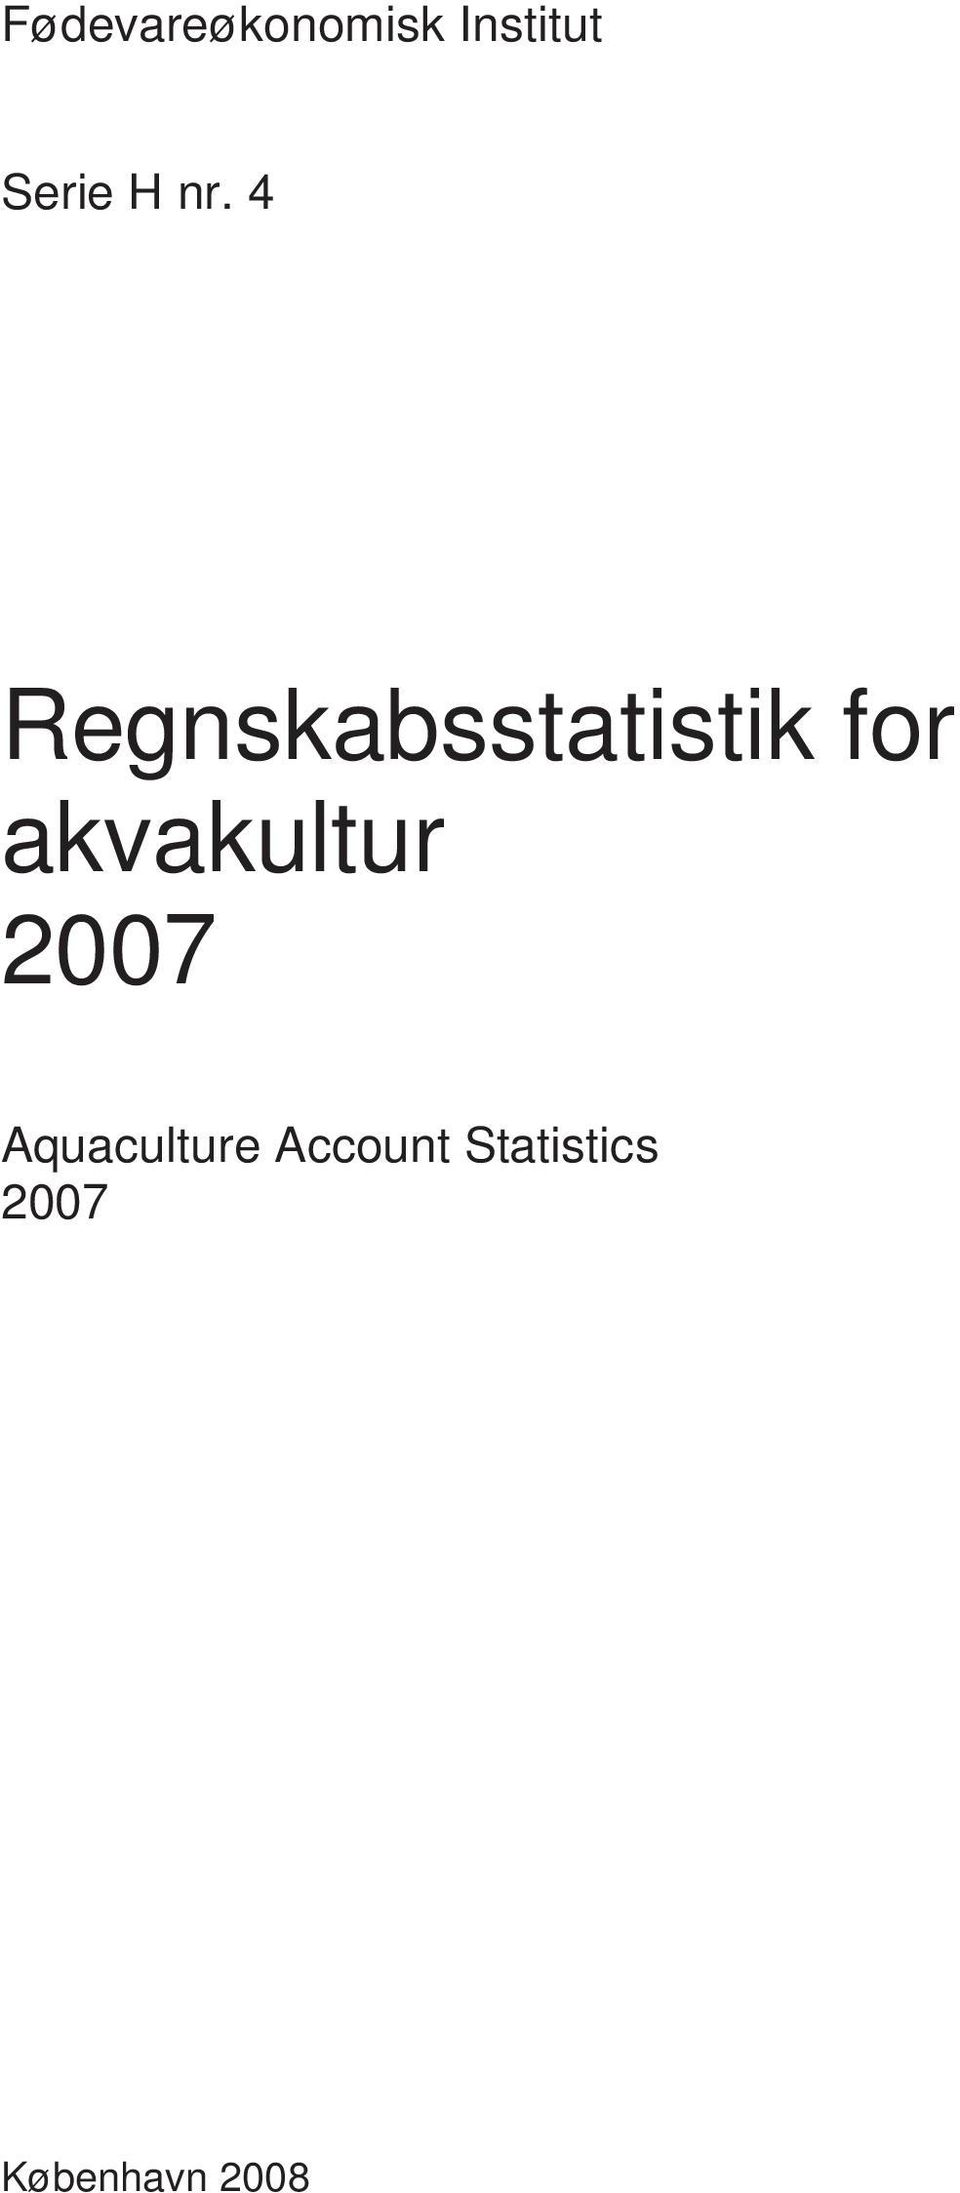 Aquaculture Account Statistics 2007